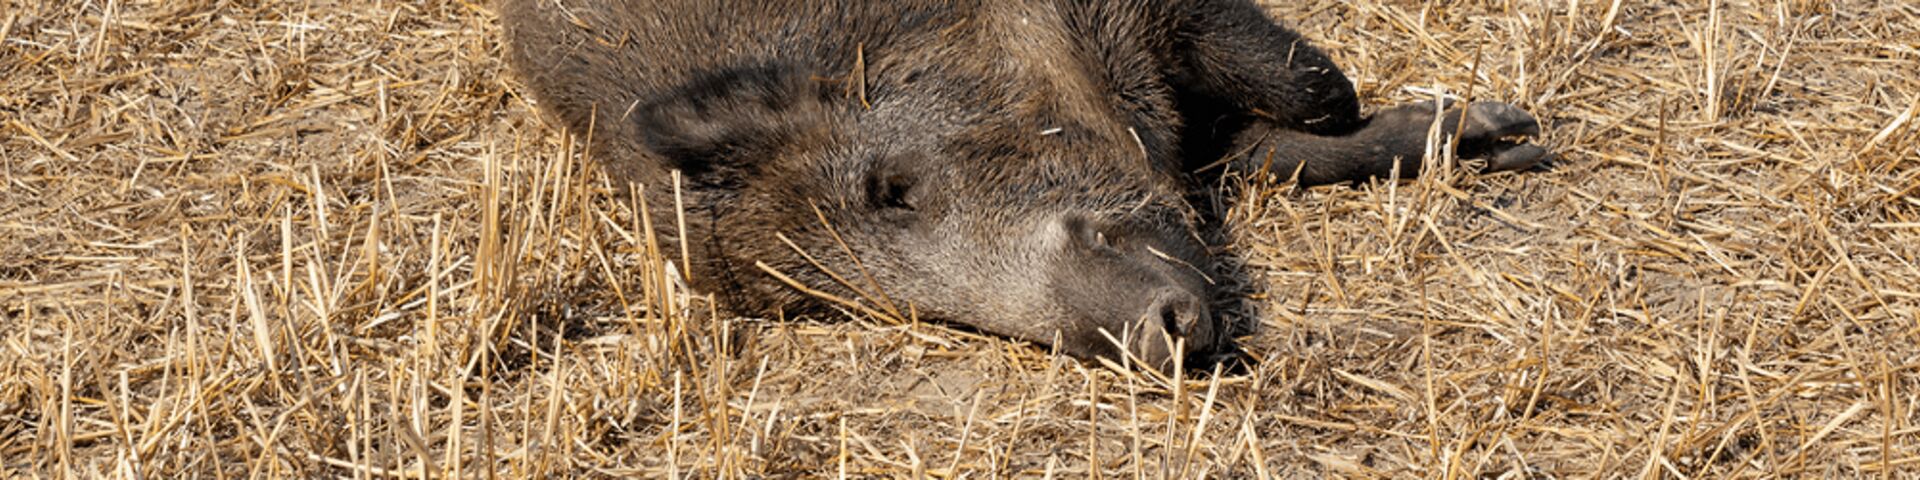 ASF campaign wild boar